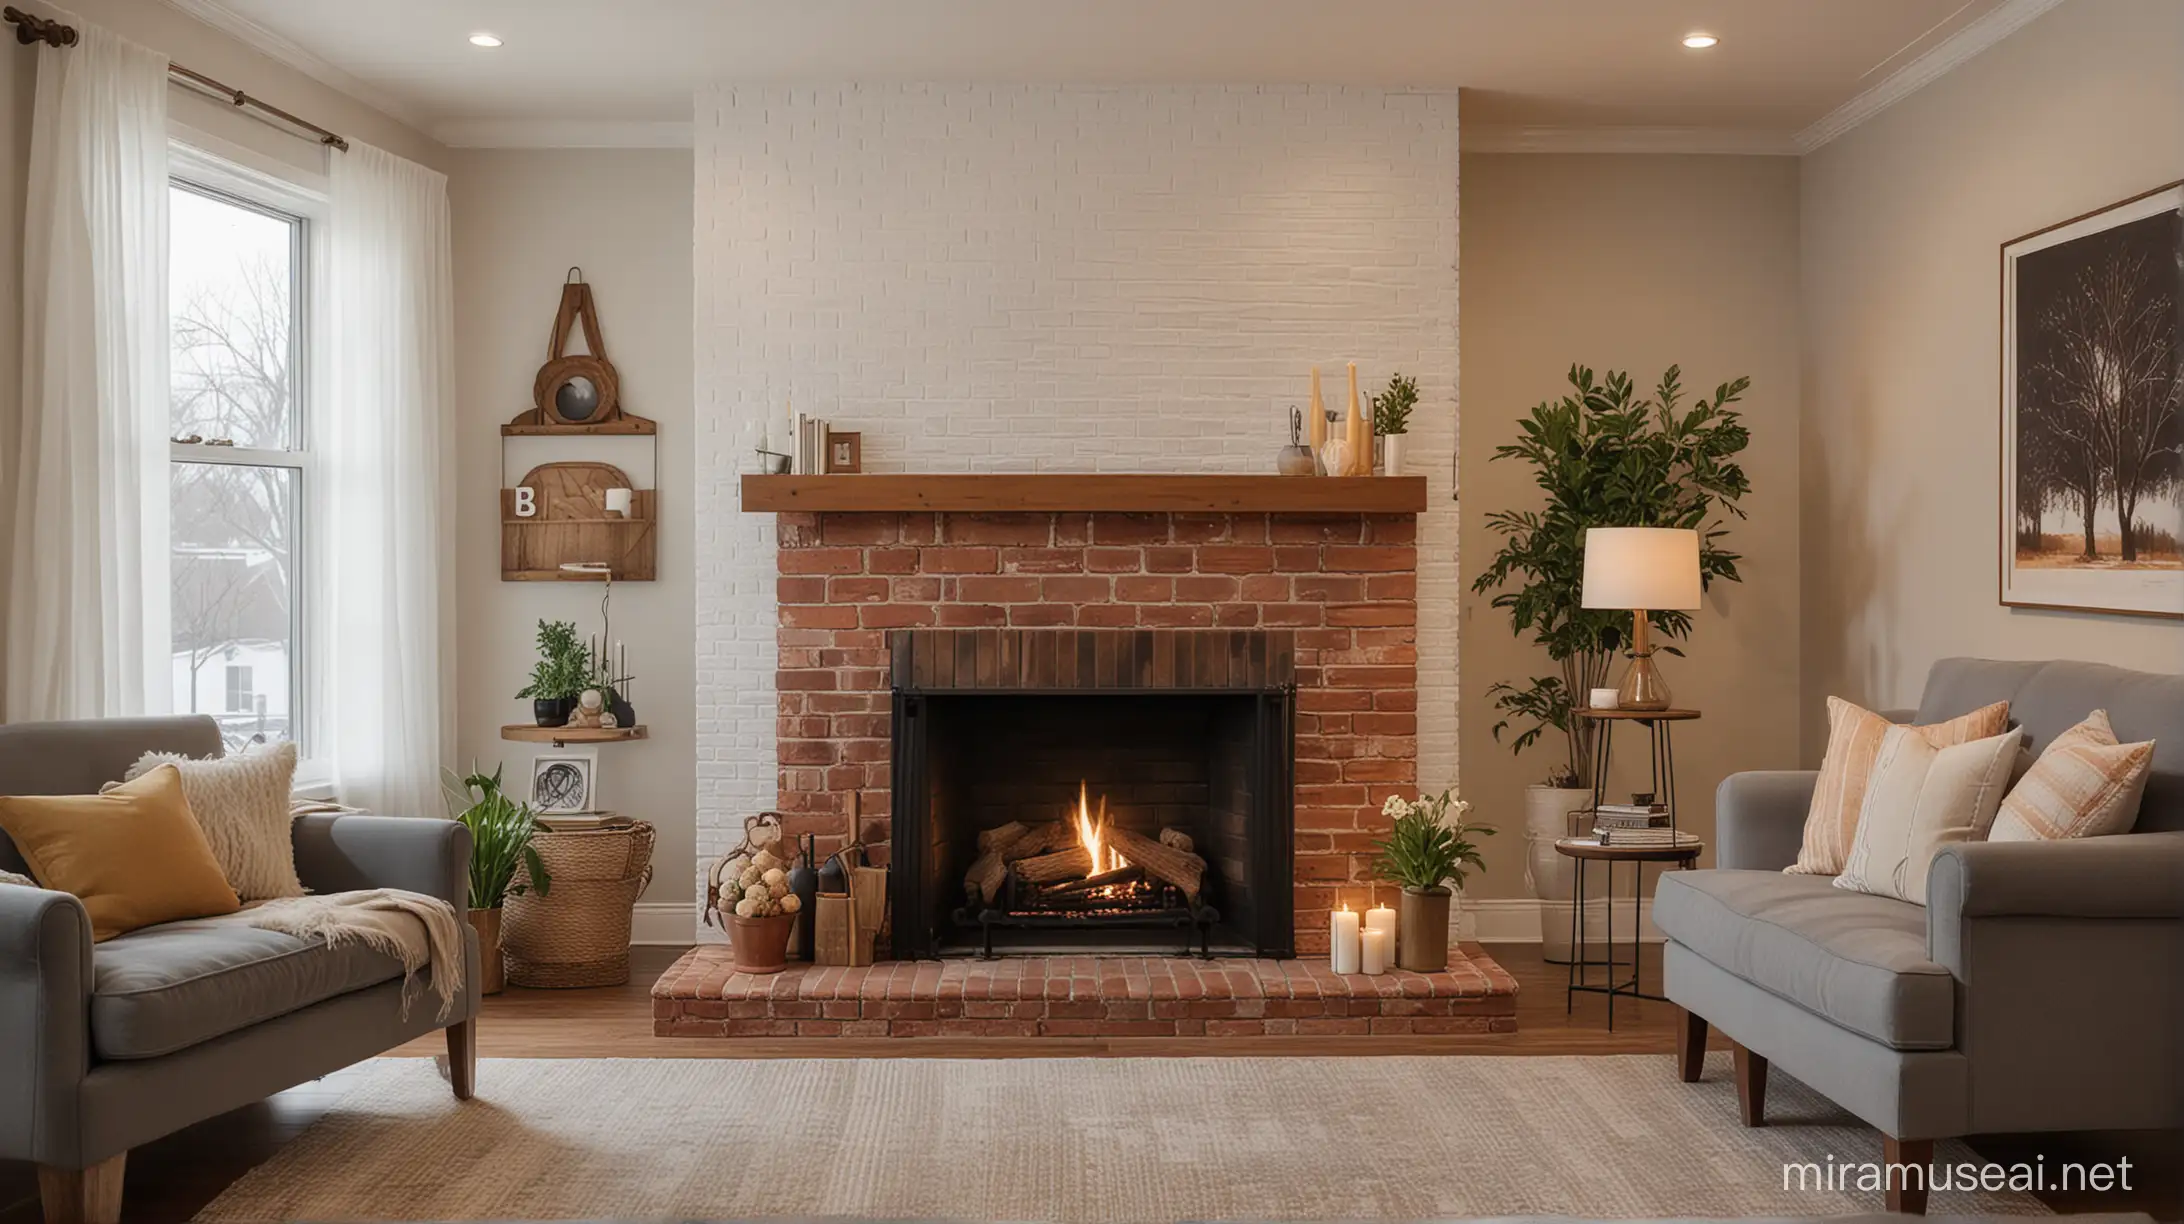 Tungku pembakaran api dari batu bata yang estetik di pojokan ruang keluarga dengan warna cat serta penerangan temaram